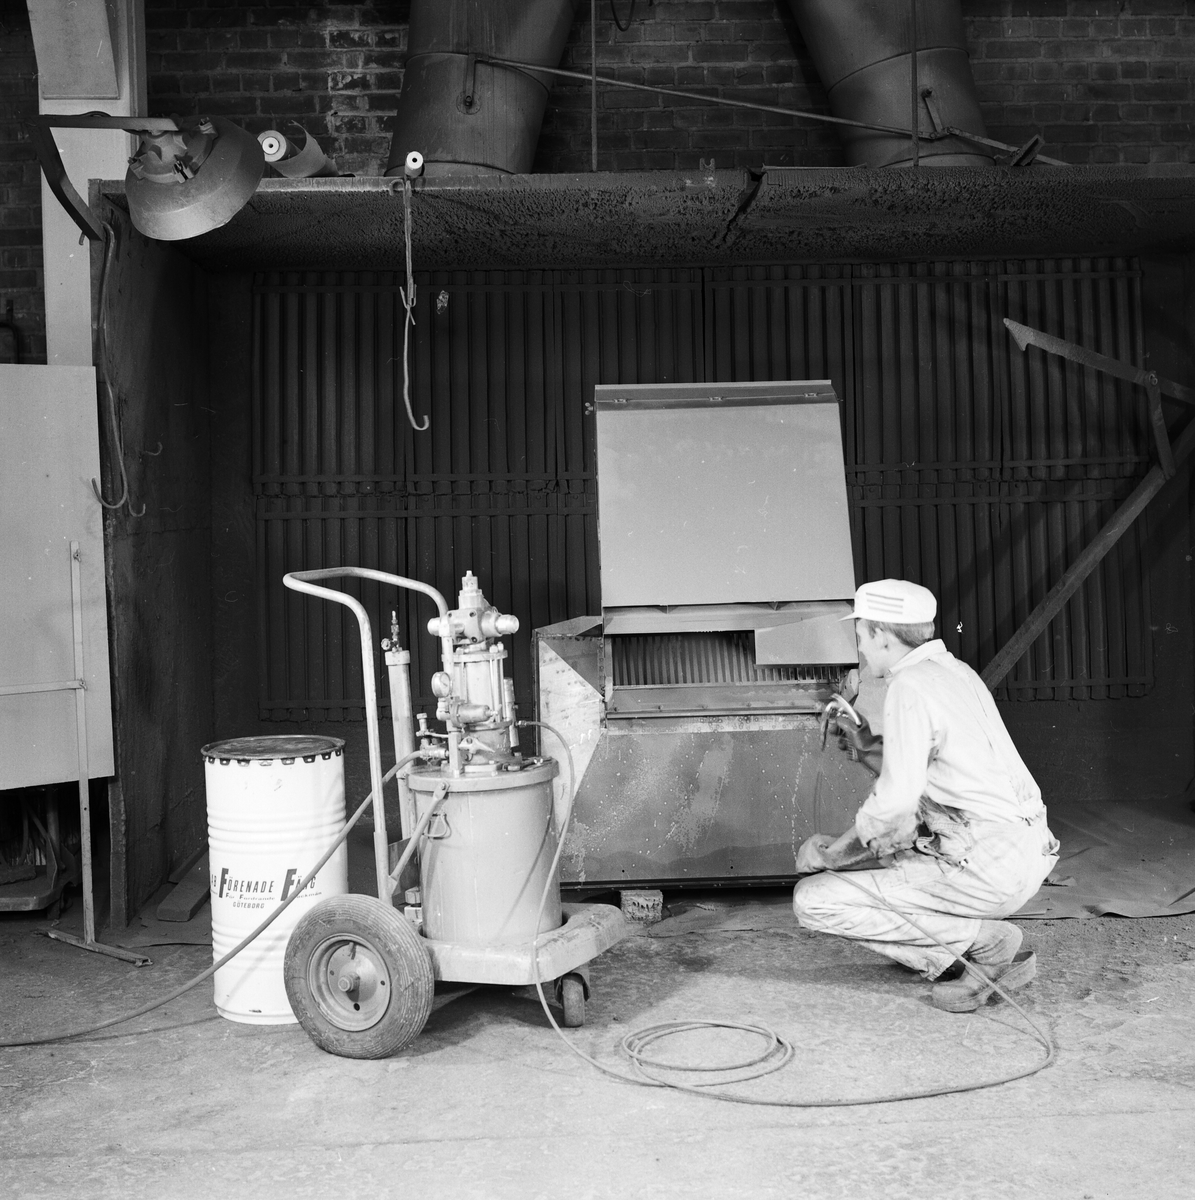 Målning av lantbruksmaskiner hos AB Westeråsmaskiner, sannolikt Morgongåva, Uppland, augusti 1962